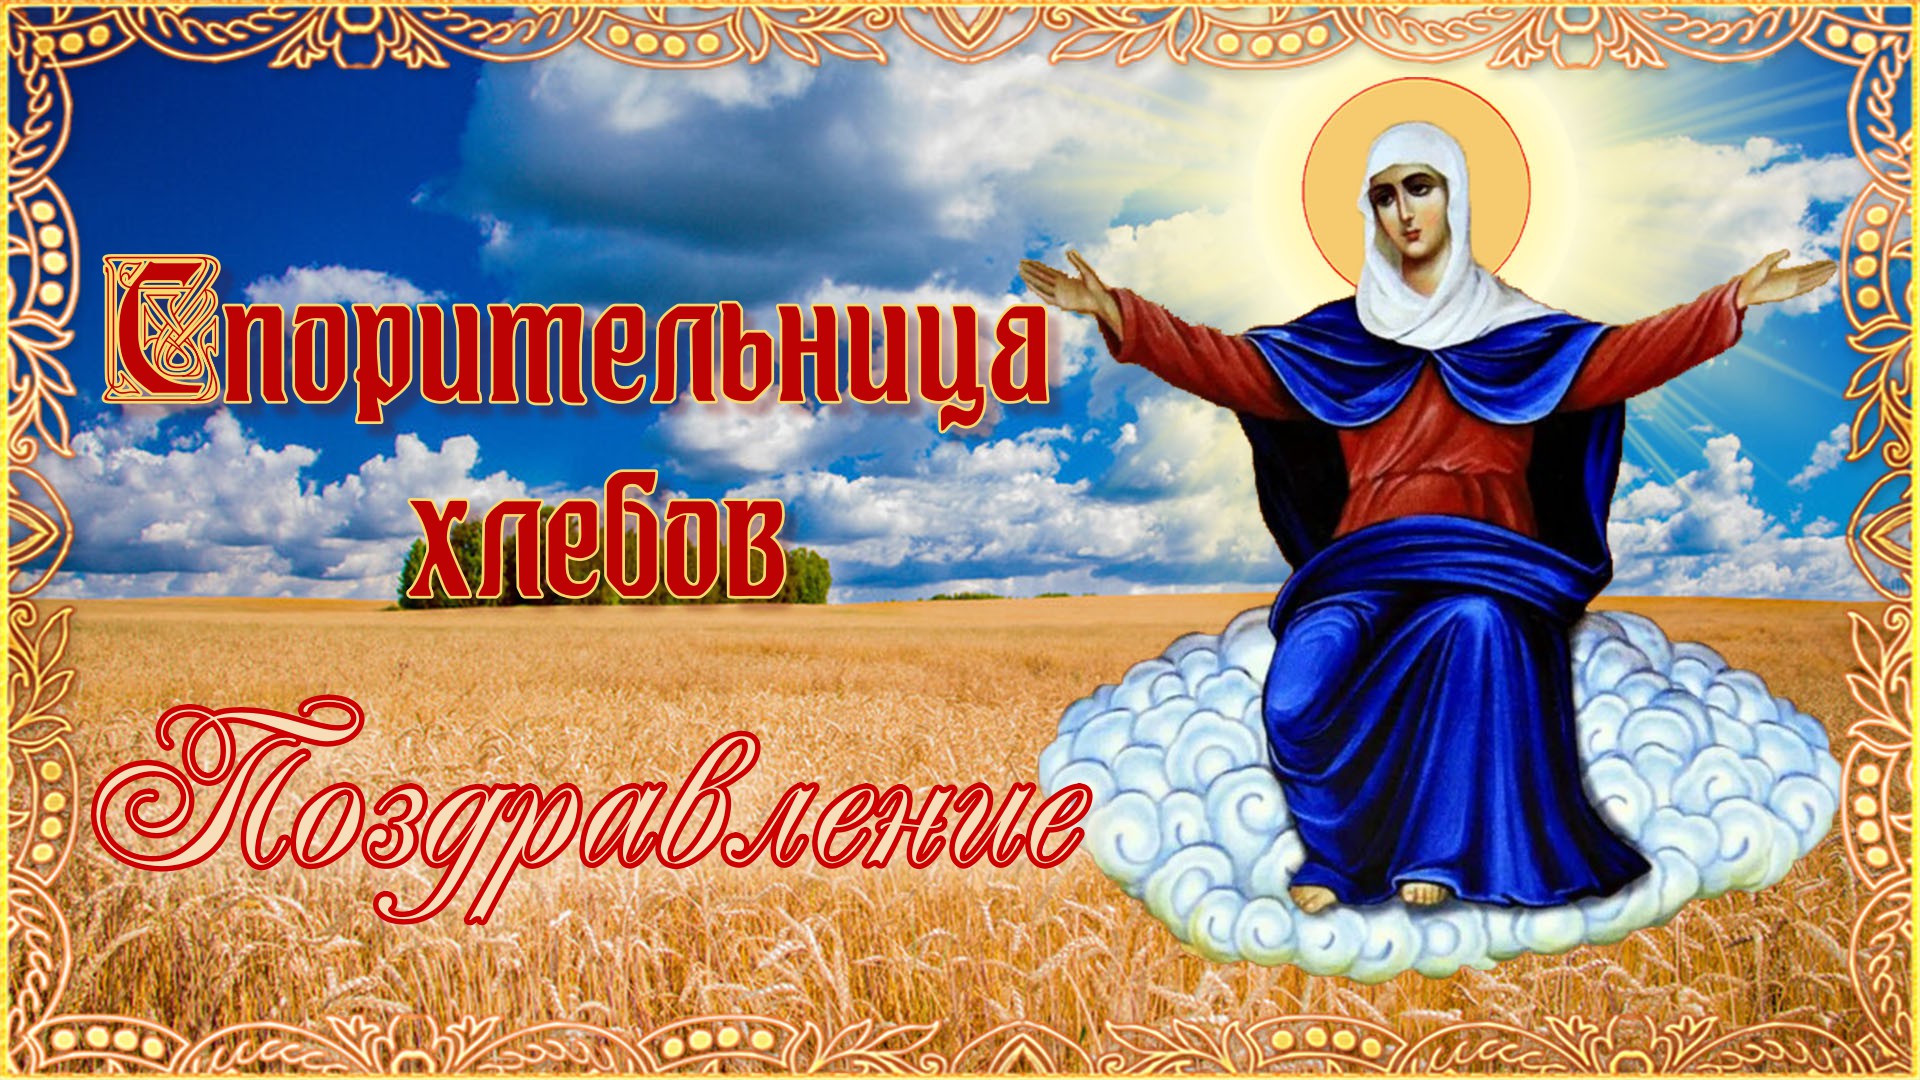 Праздник иконы Божией матери Спорительница хлебов 28 октября